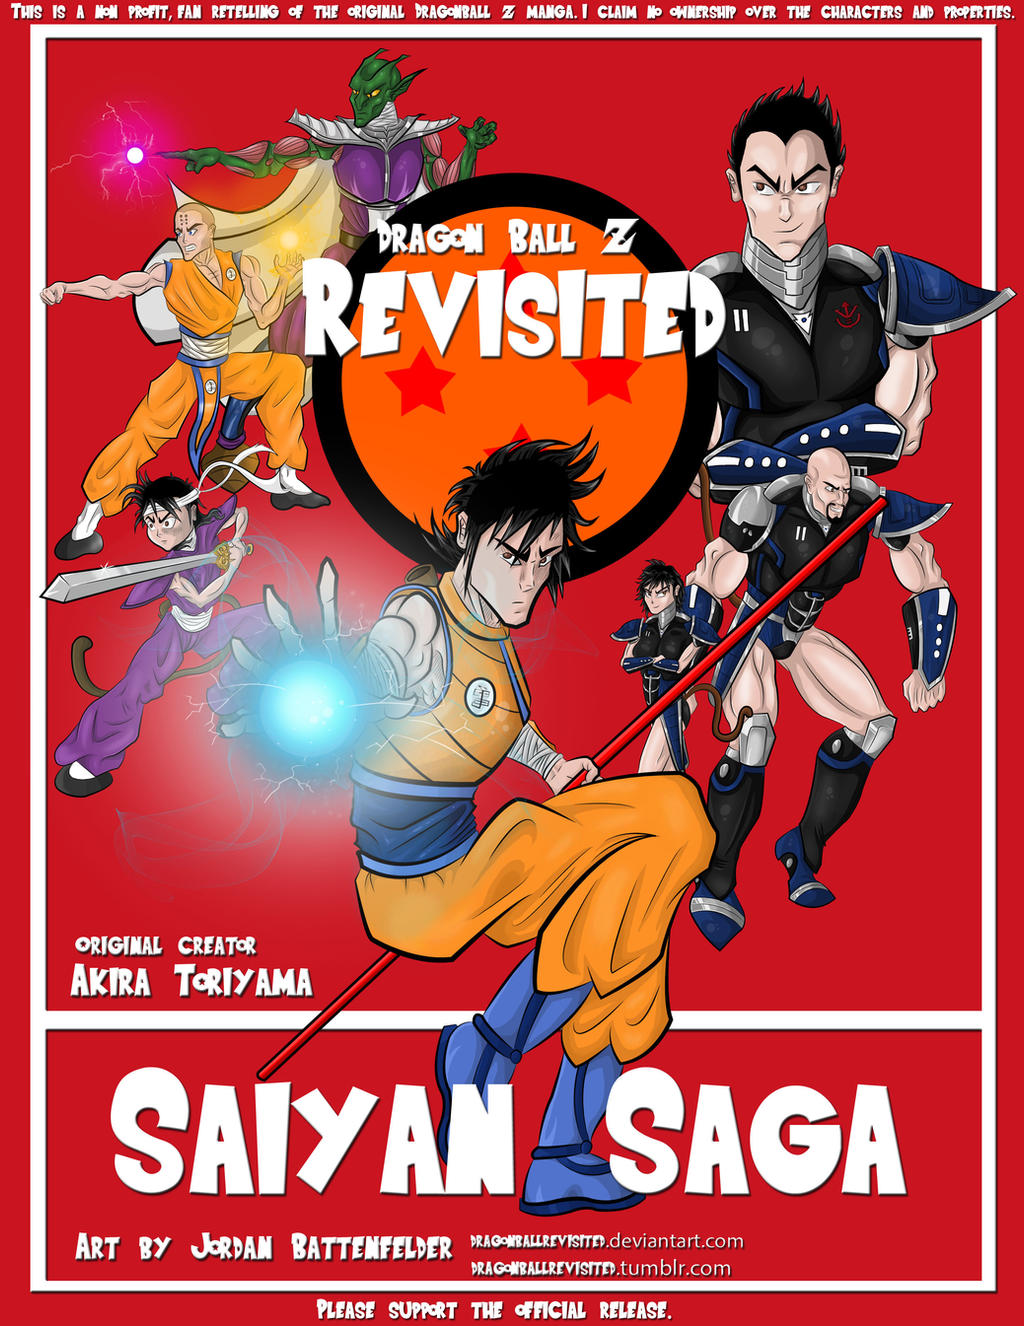 Dragon Ball Z Sagas fanart by Raydash30 on DeviantArt